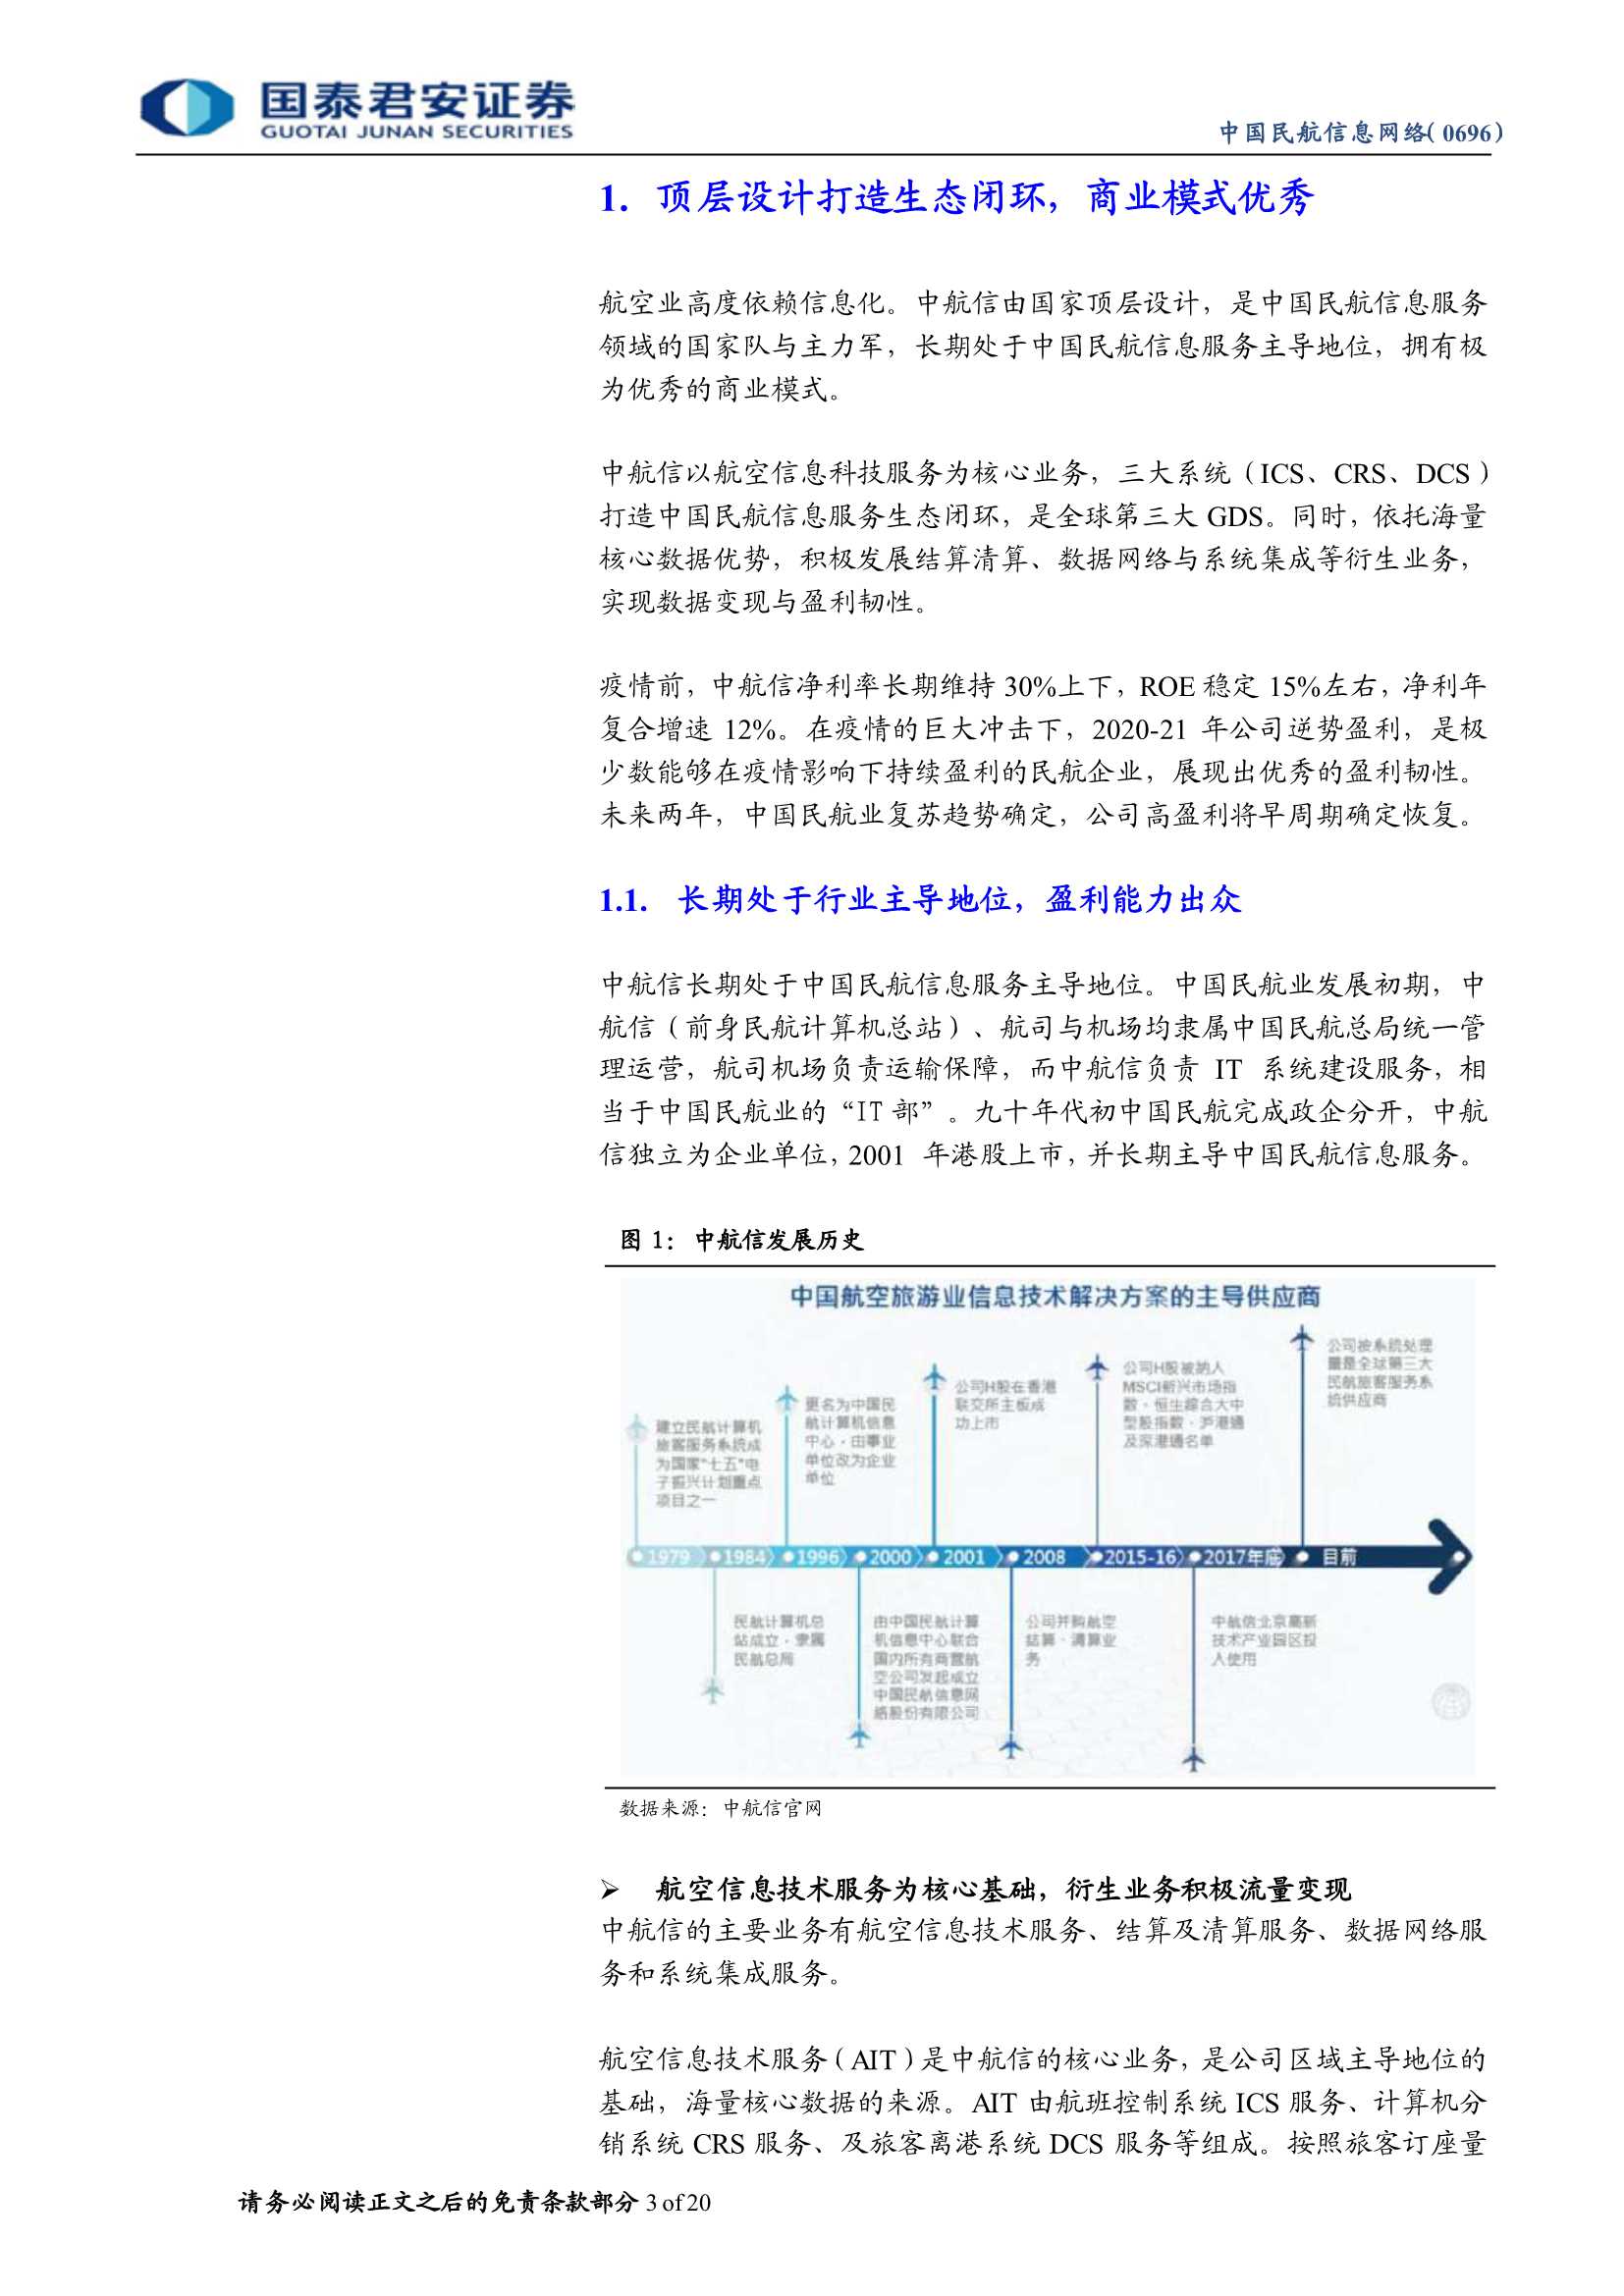 国泰君安-中国民航信息网络-0696.HK-深度报告：被显著低估的民航复苏早周期标的-20220227-20页